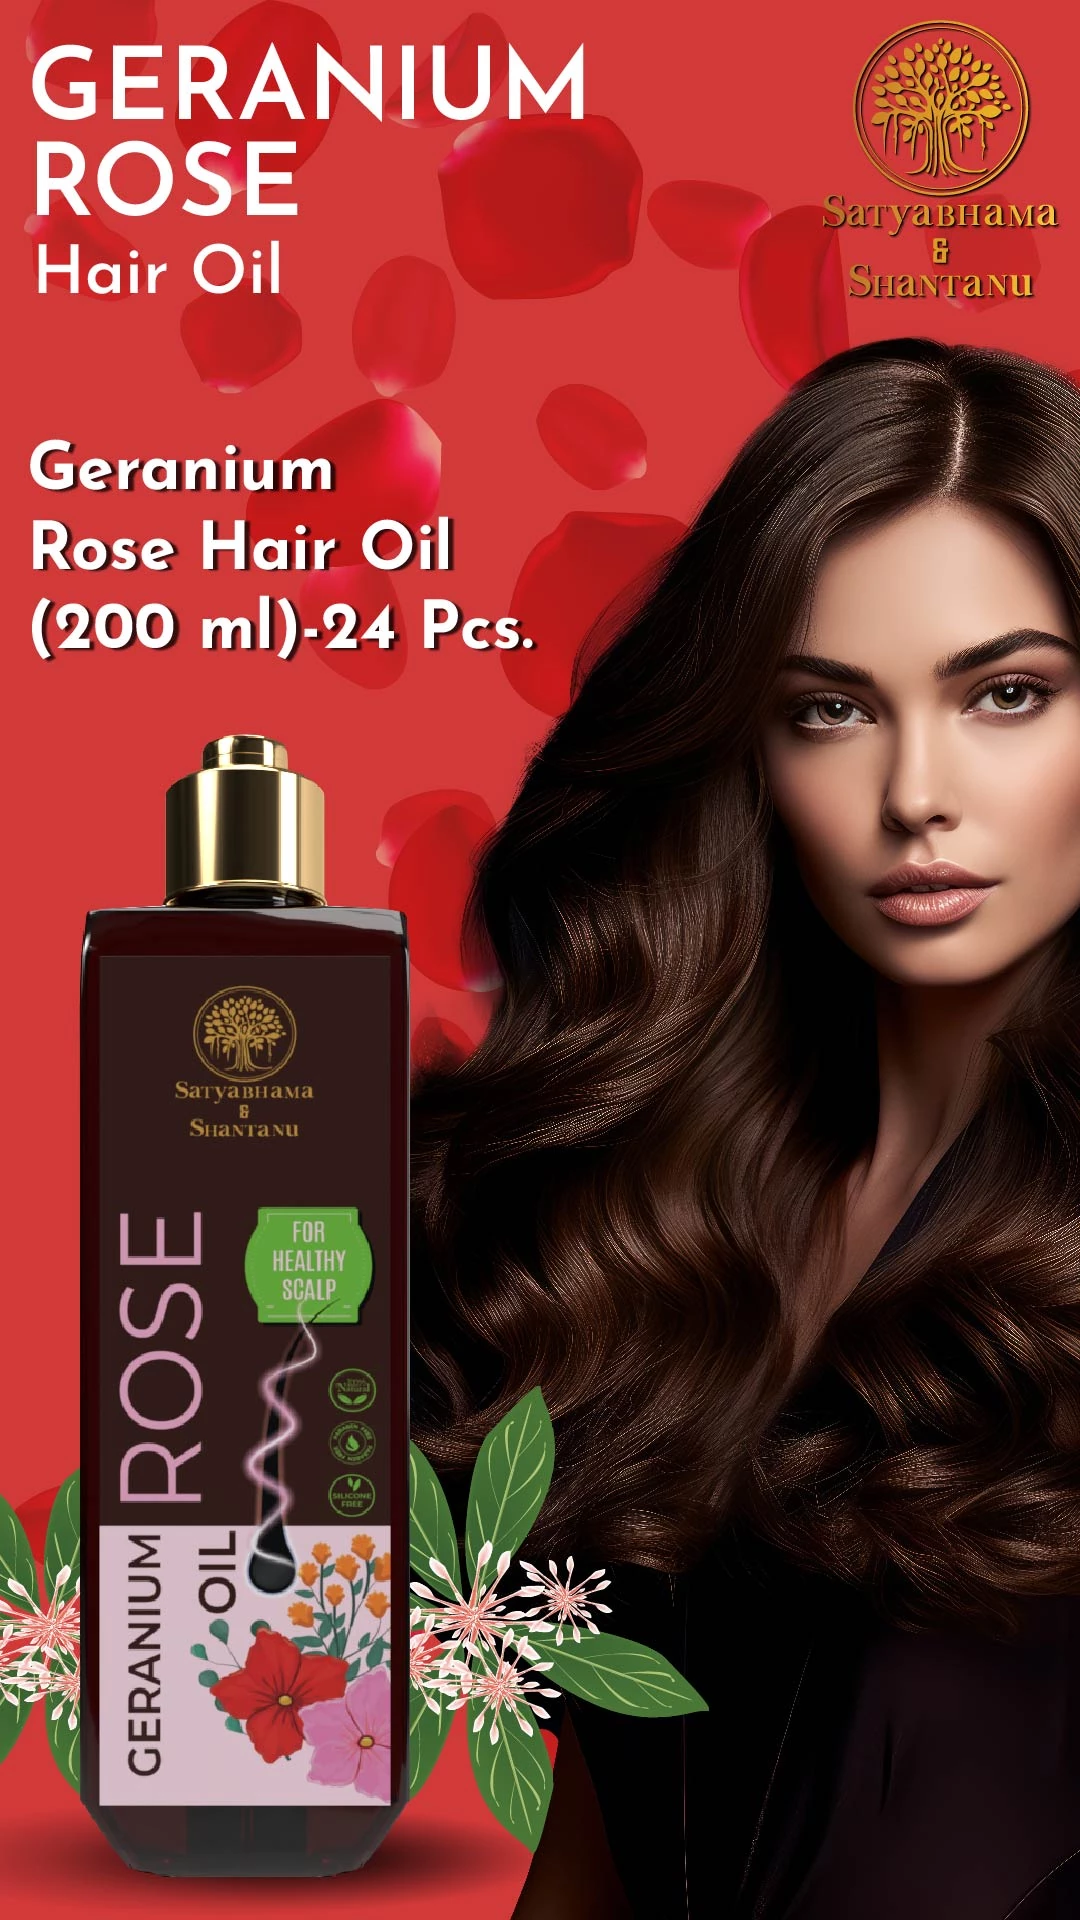 RBV B2B Geranium Rose Hair Oil (200 ml)-24 Pcs.